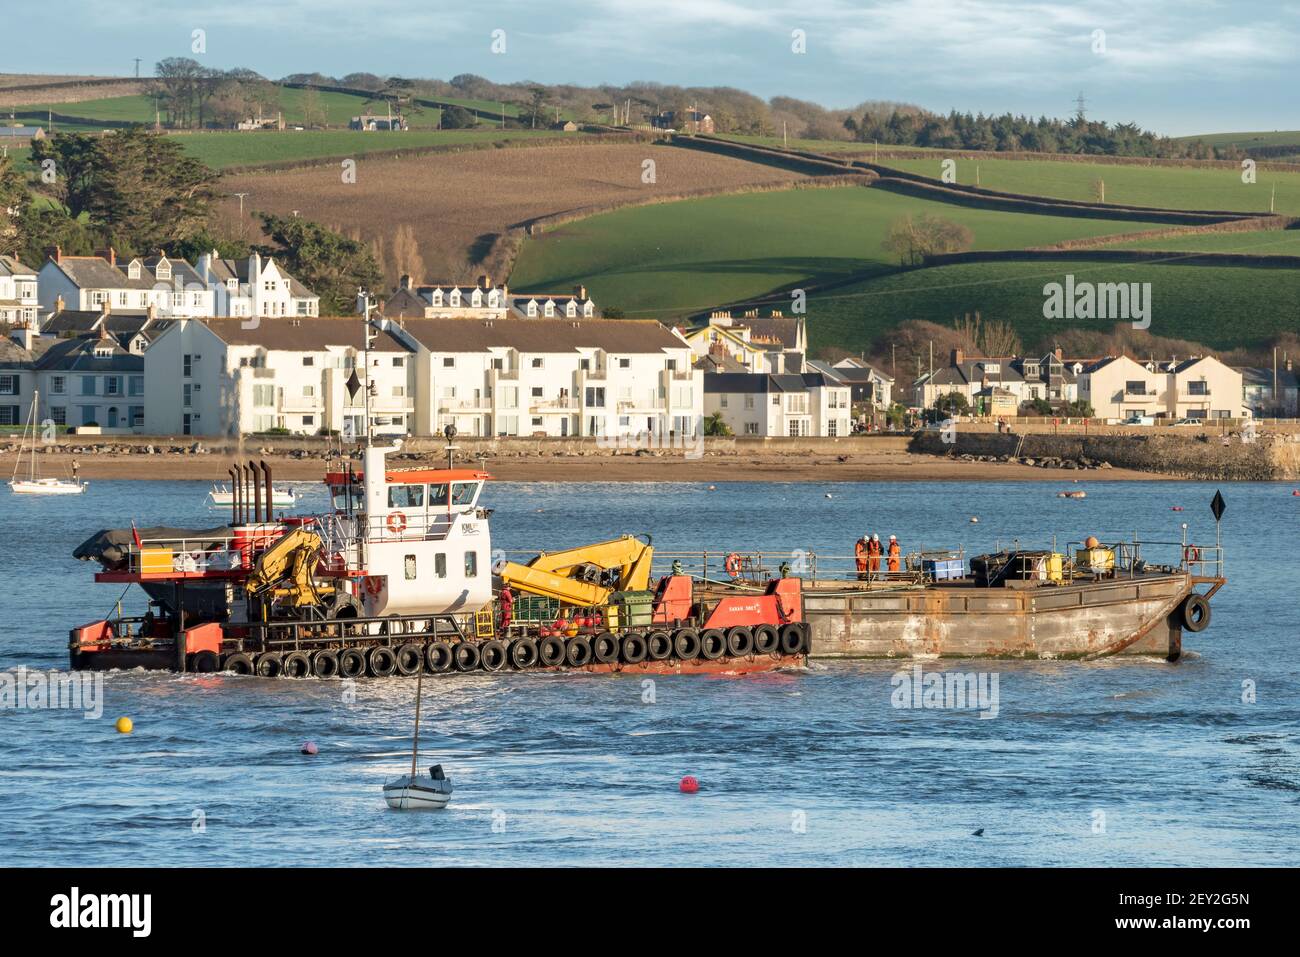 27 febbraio 2021 - il primo nuovo ordine di riassemblaggio per lo storico cantiere navale di Appedore, nel Devon del Nord, da quando è stato rilevato da Harland & Wolff. Il 38 Foto Stock